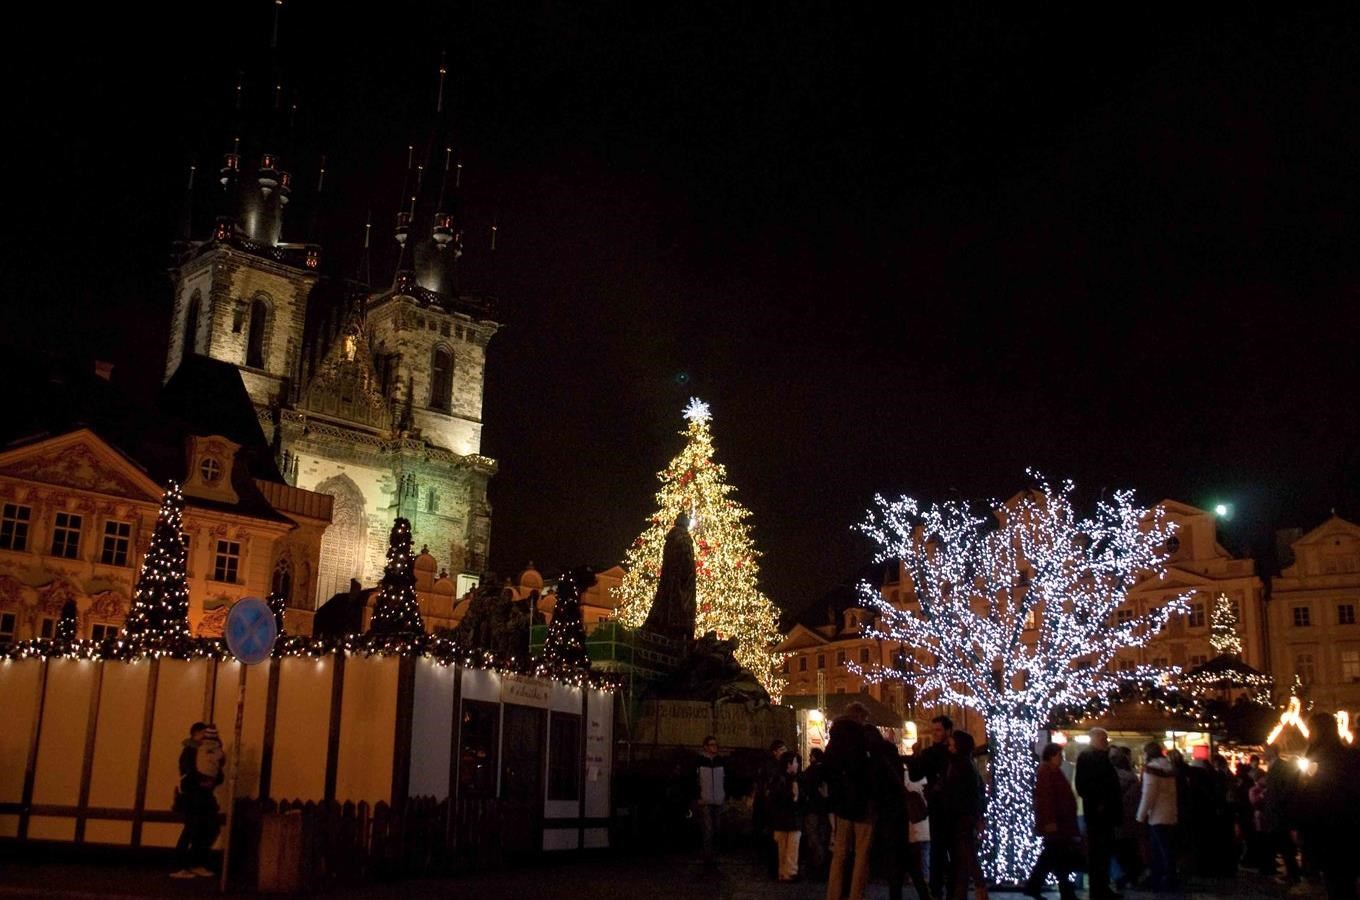 Vánoční trhy na Staroměstském náměstí mají bohatý program